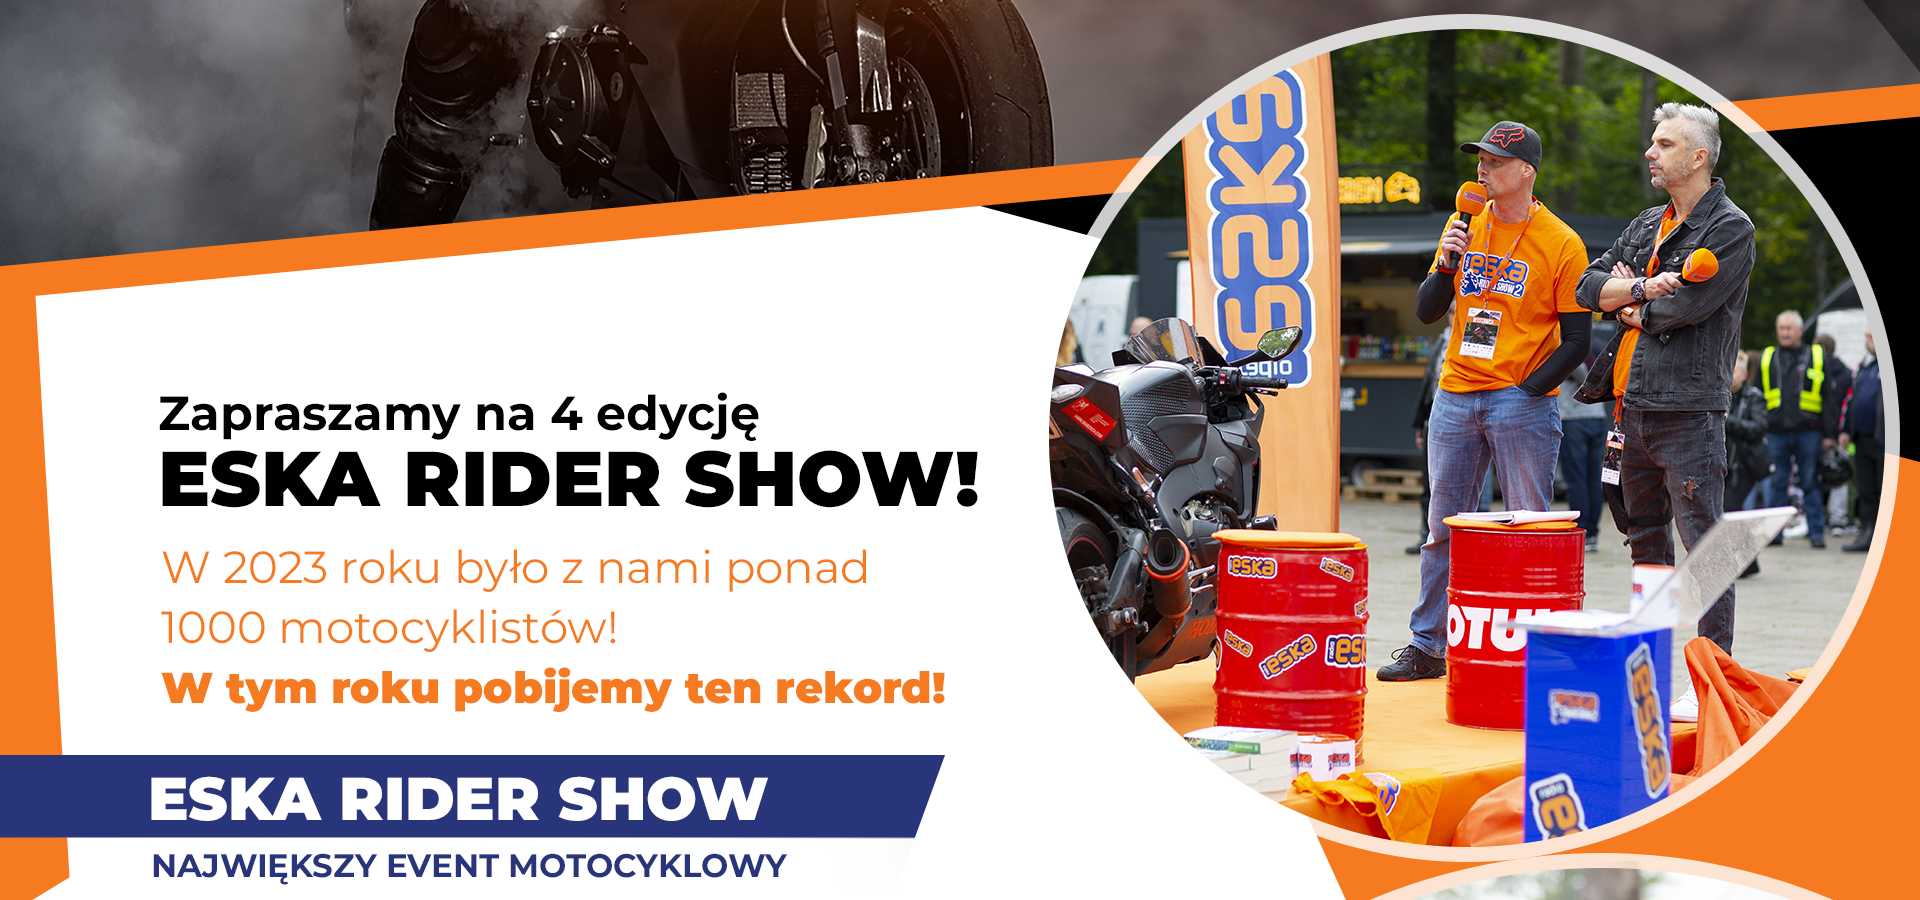 Eska rider show!